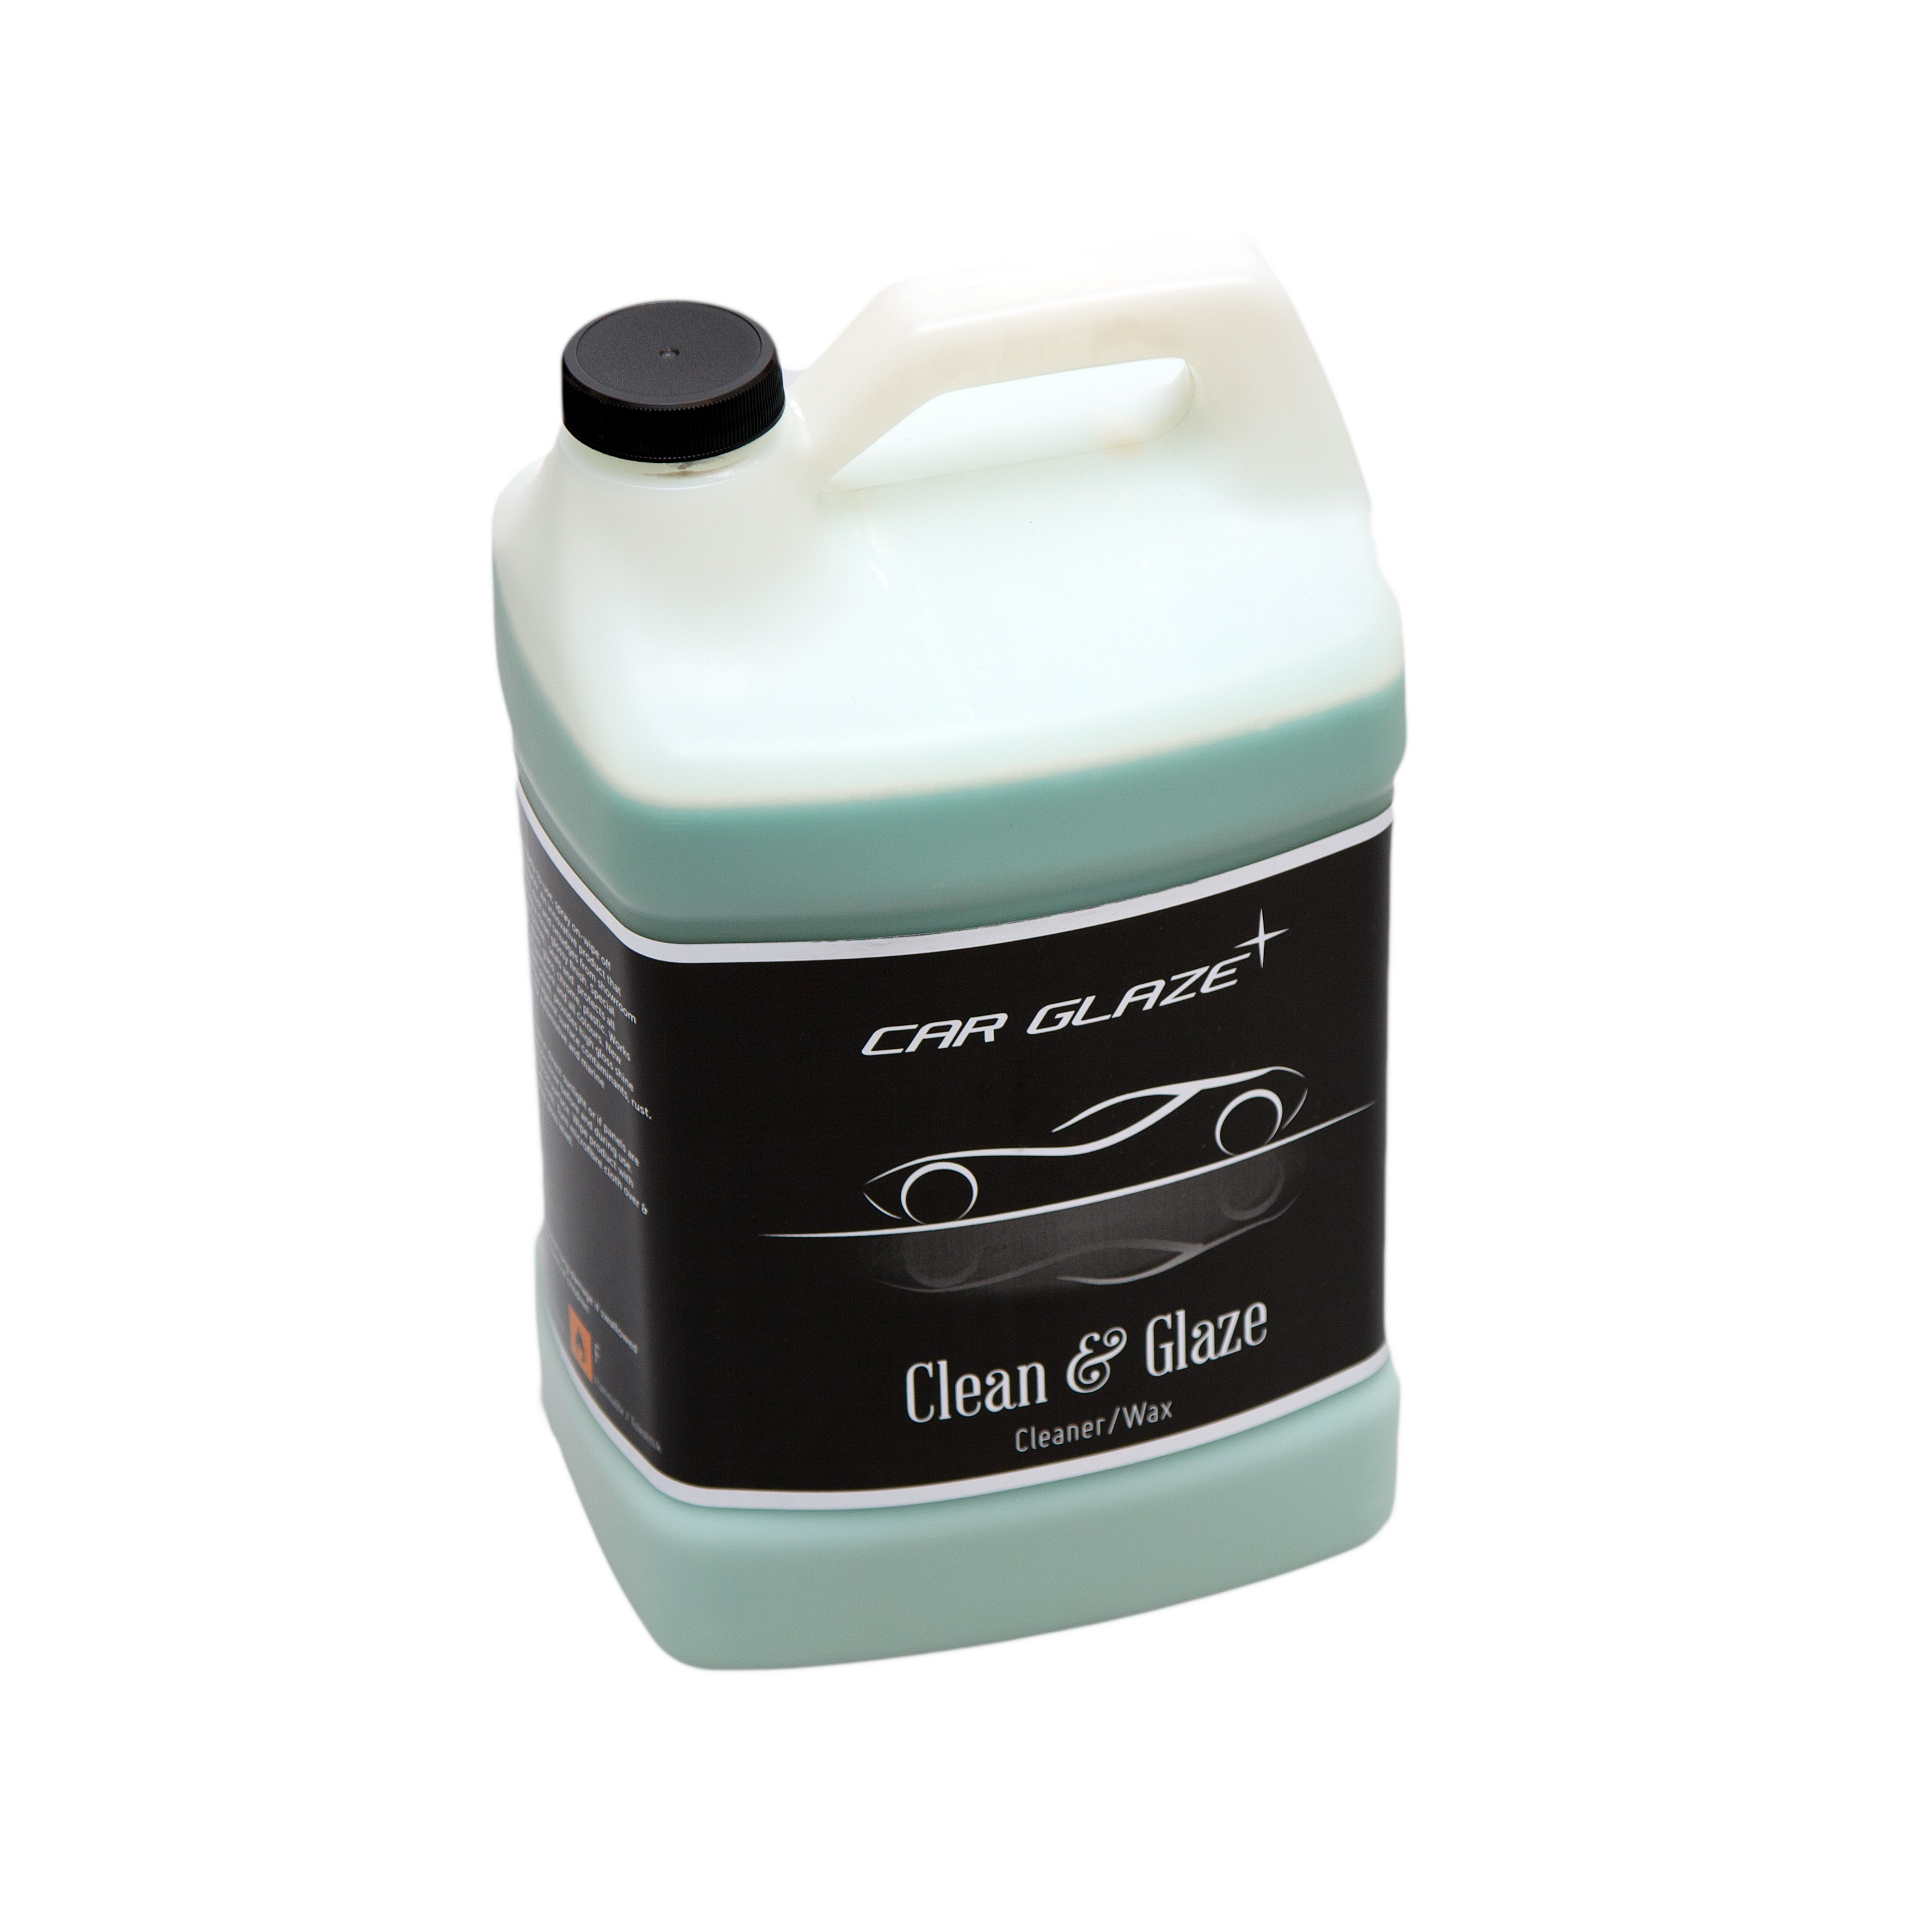 CLEAN & GLAZE - Car Glaze - vedel kiirvaha - auto vaha - puhastusvaha - kuivpuhastus - salongiautovaha